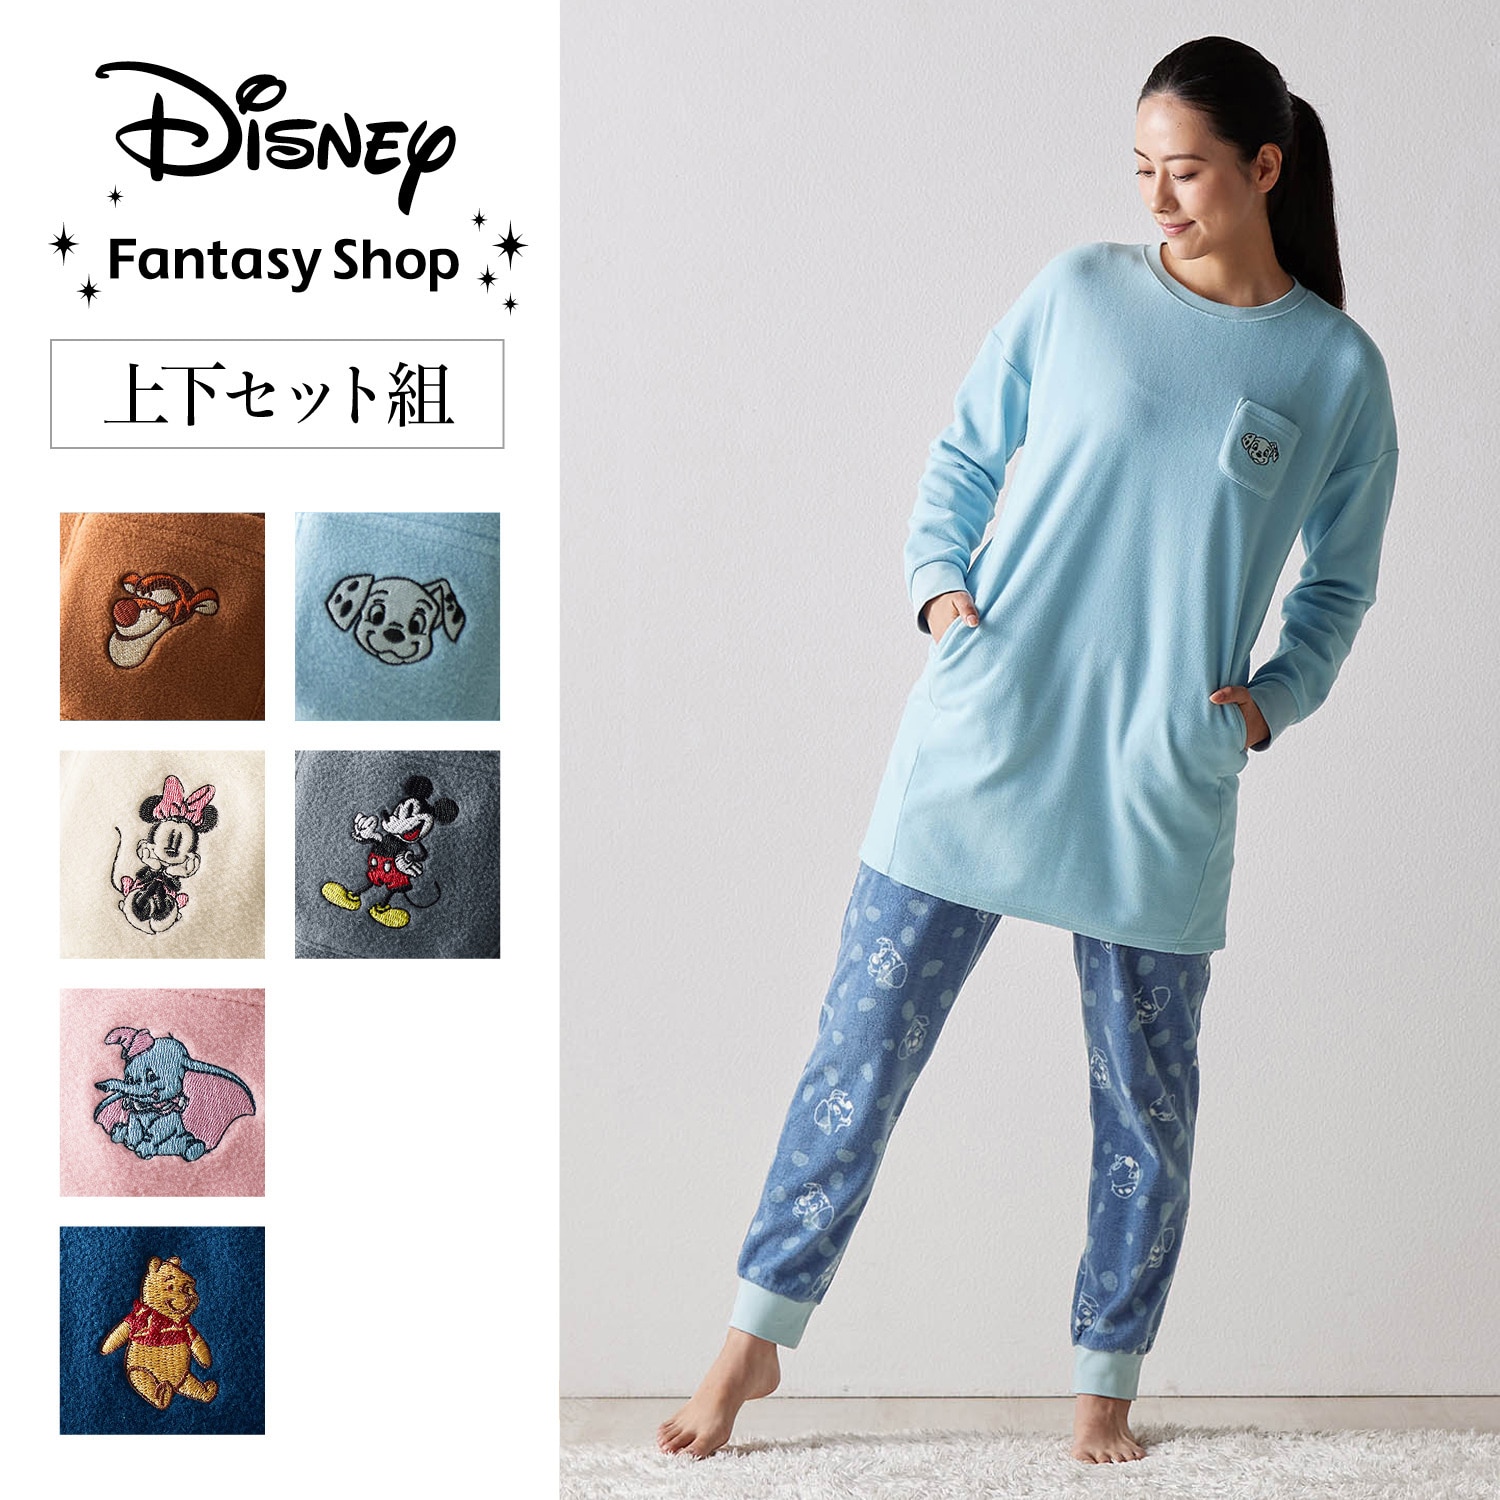 【ディズニー/Disney】【新柄登場】 レディース肌側綿フリースチュニックパジャマ(選べるキャラクター)